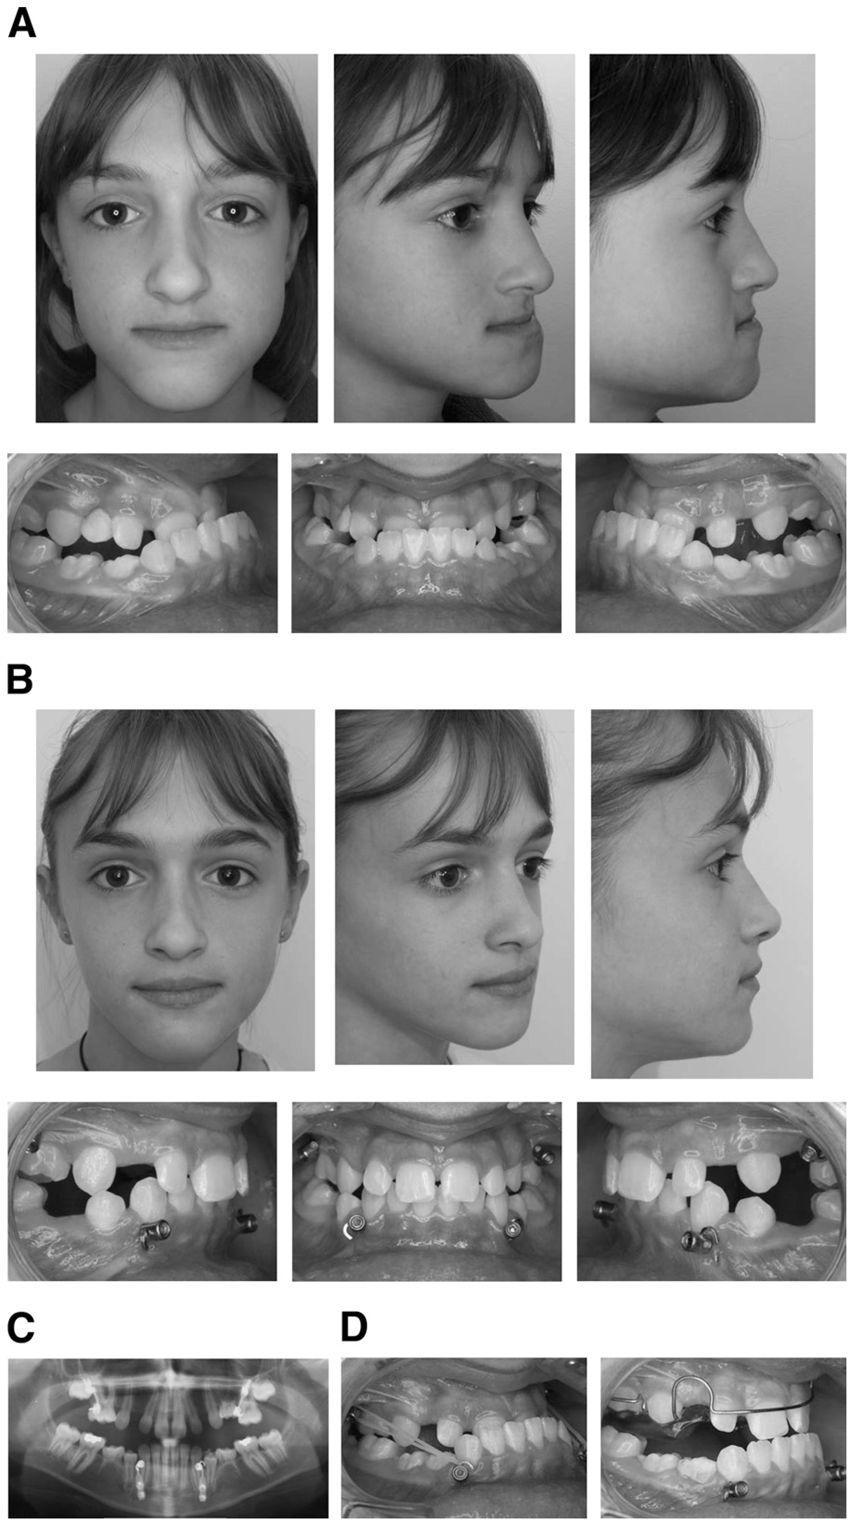 De Clerck et al. Page 8 FIGURE 3. Patient 3. A, Pretreatment facial and intraoral photographs. B, Post-treatment facial and intraoral photographs.